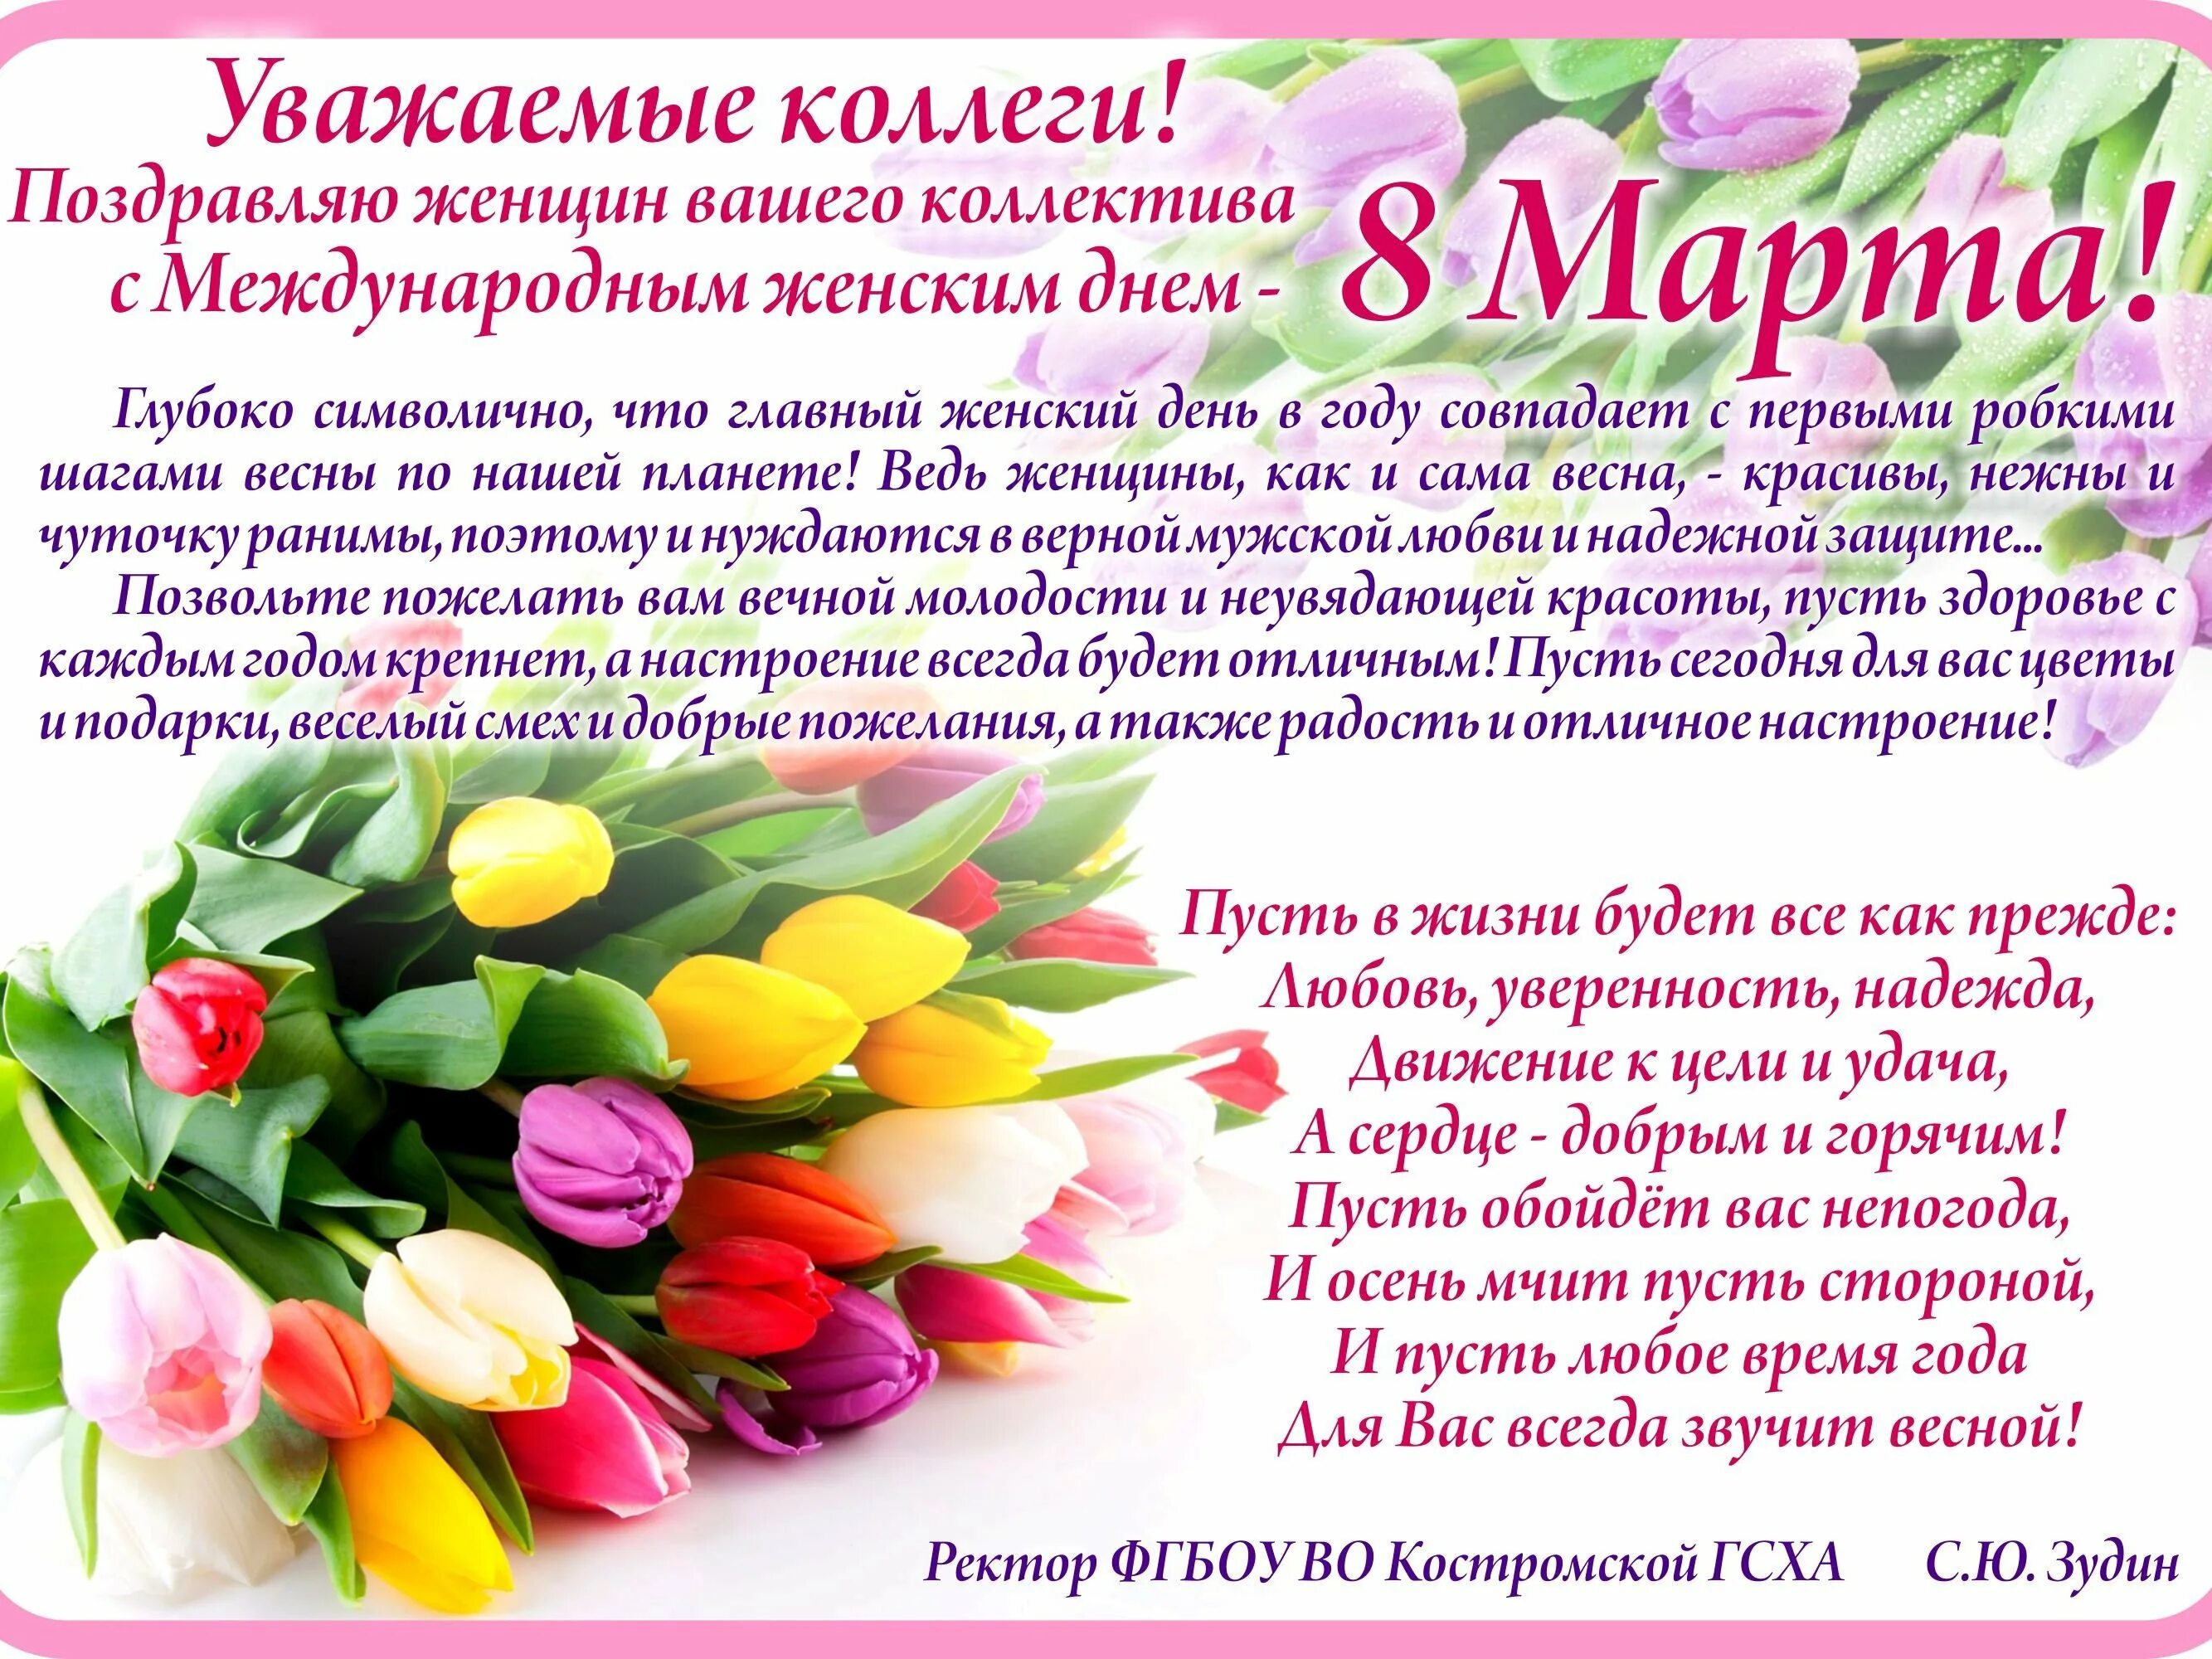 В связи с международным женским днем. Поздравление с 8 мартом коллегам.